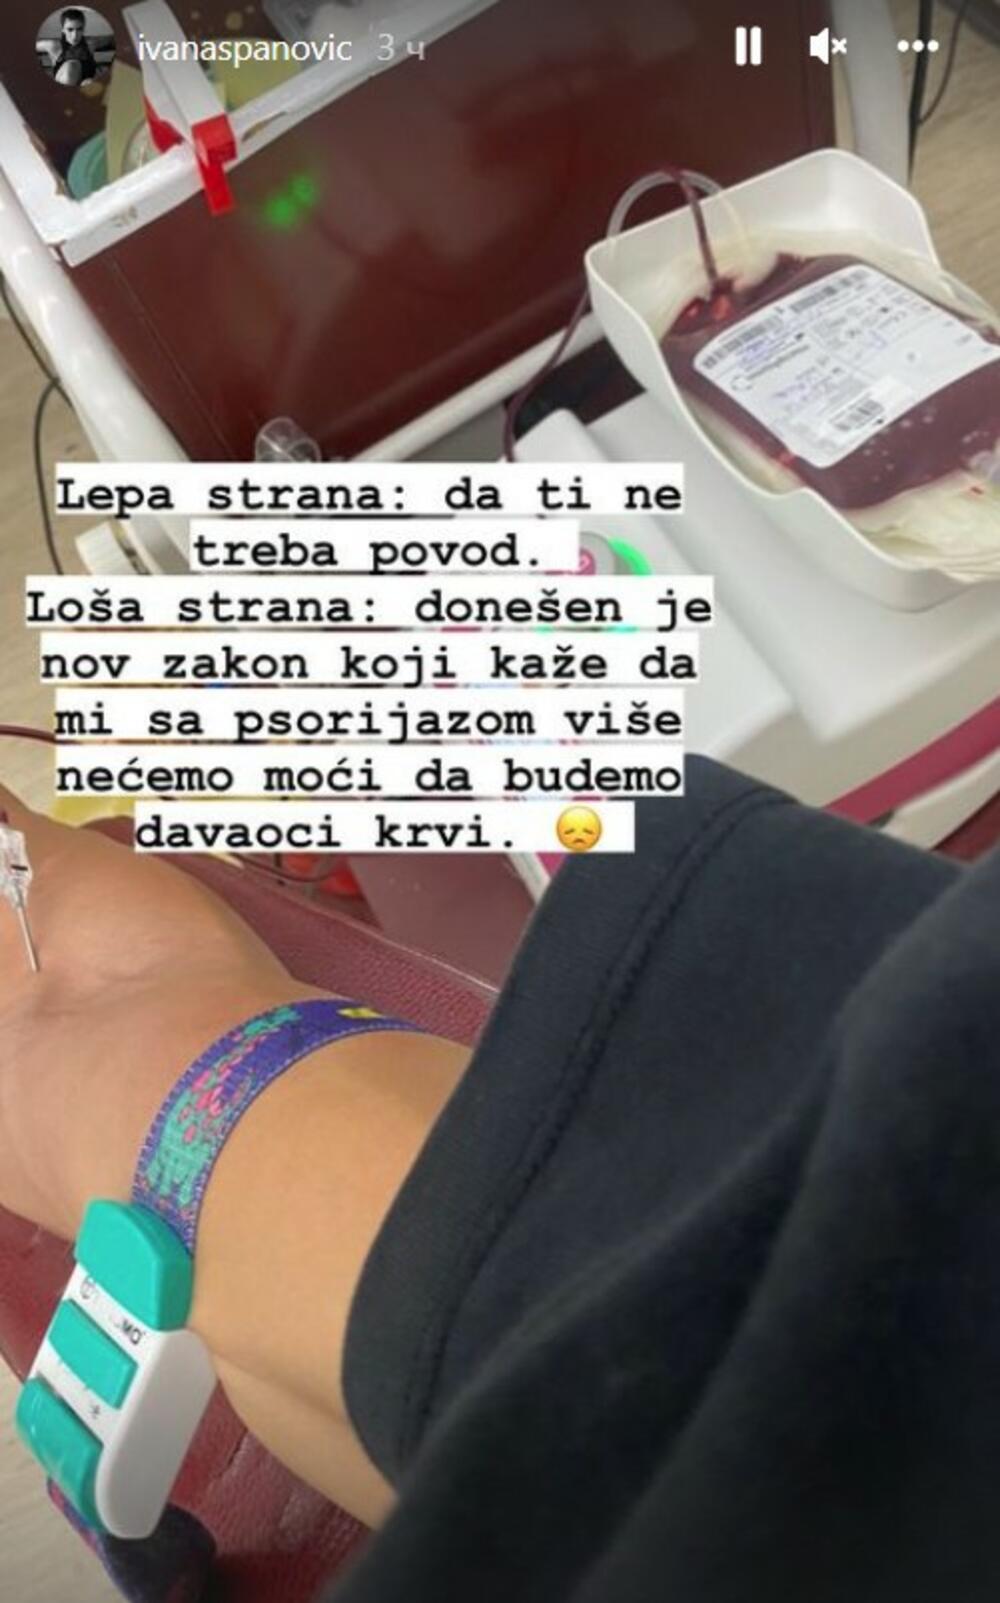 Ivana Vuleta, Ivana Španović, davanje krvi, transfuzija